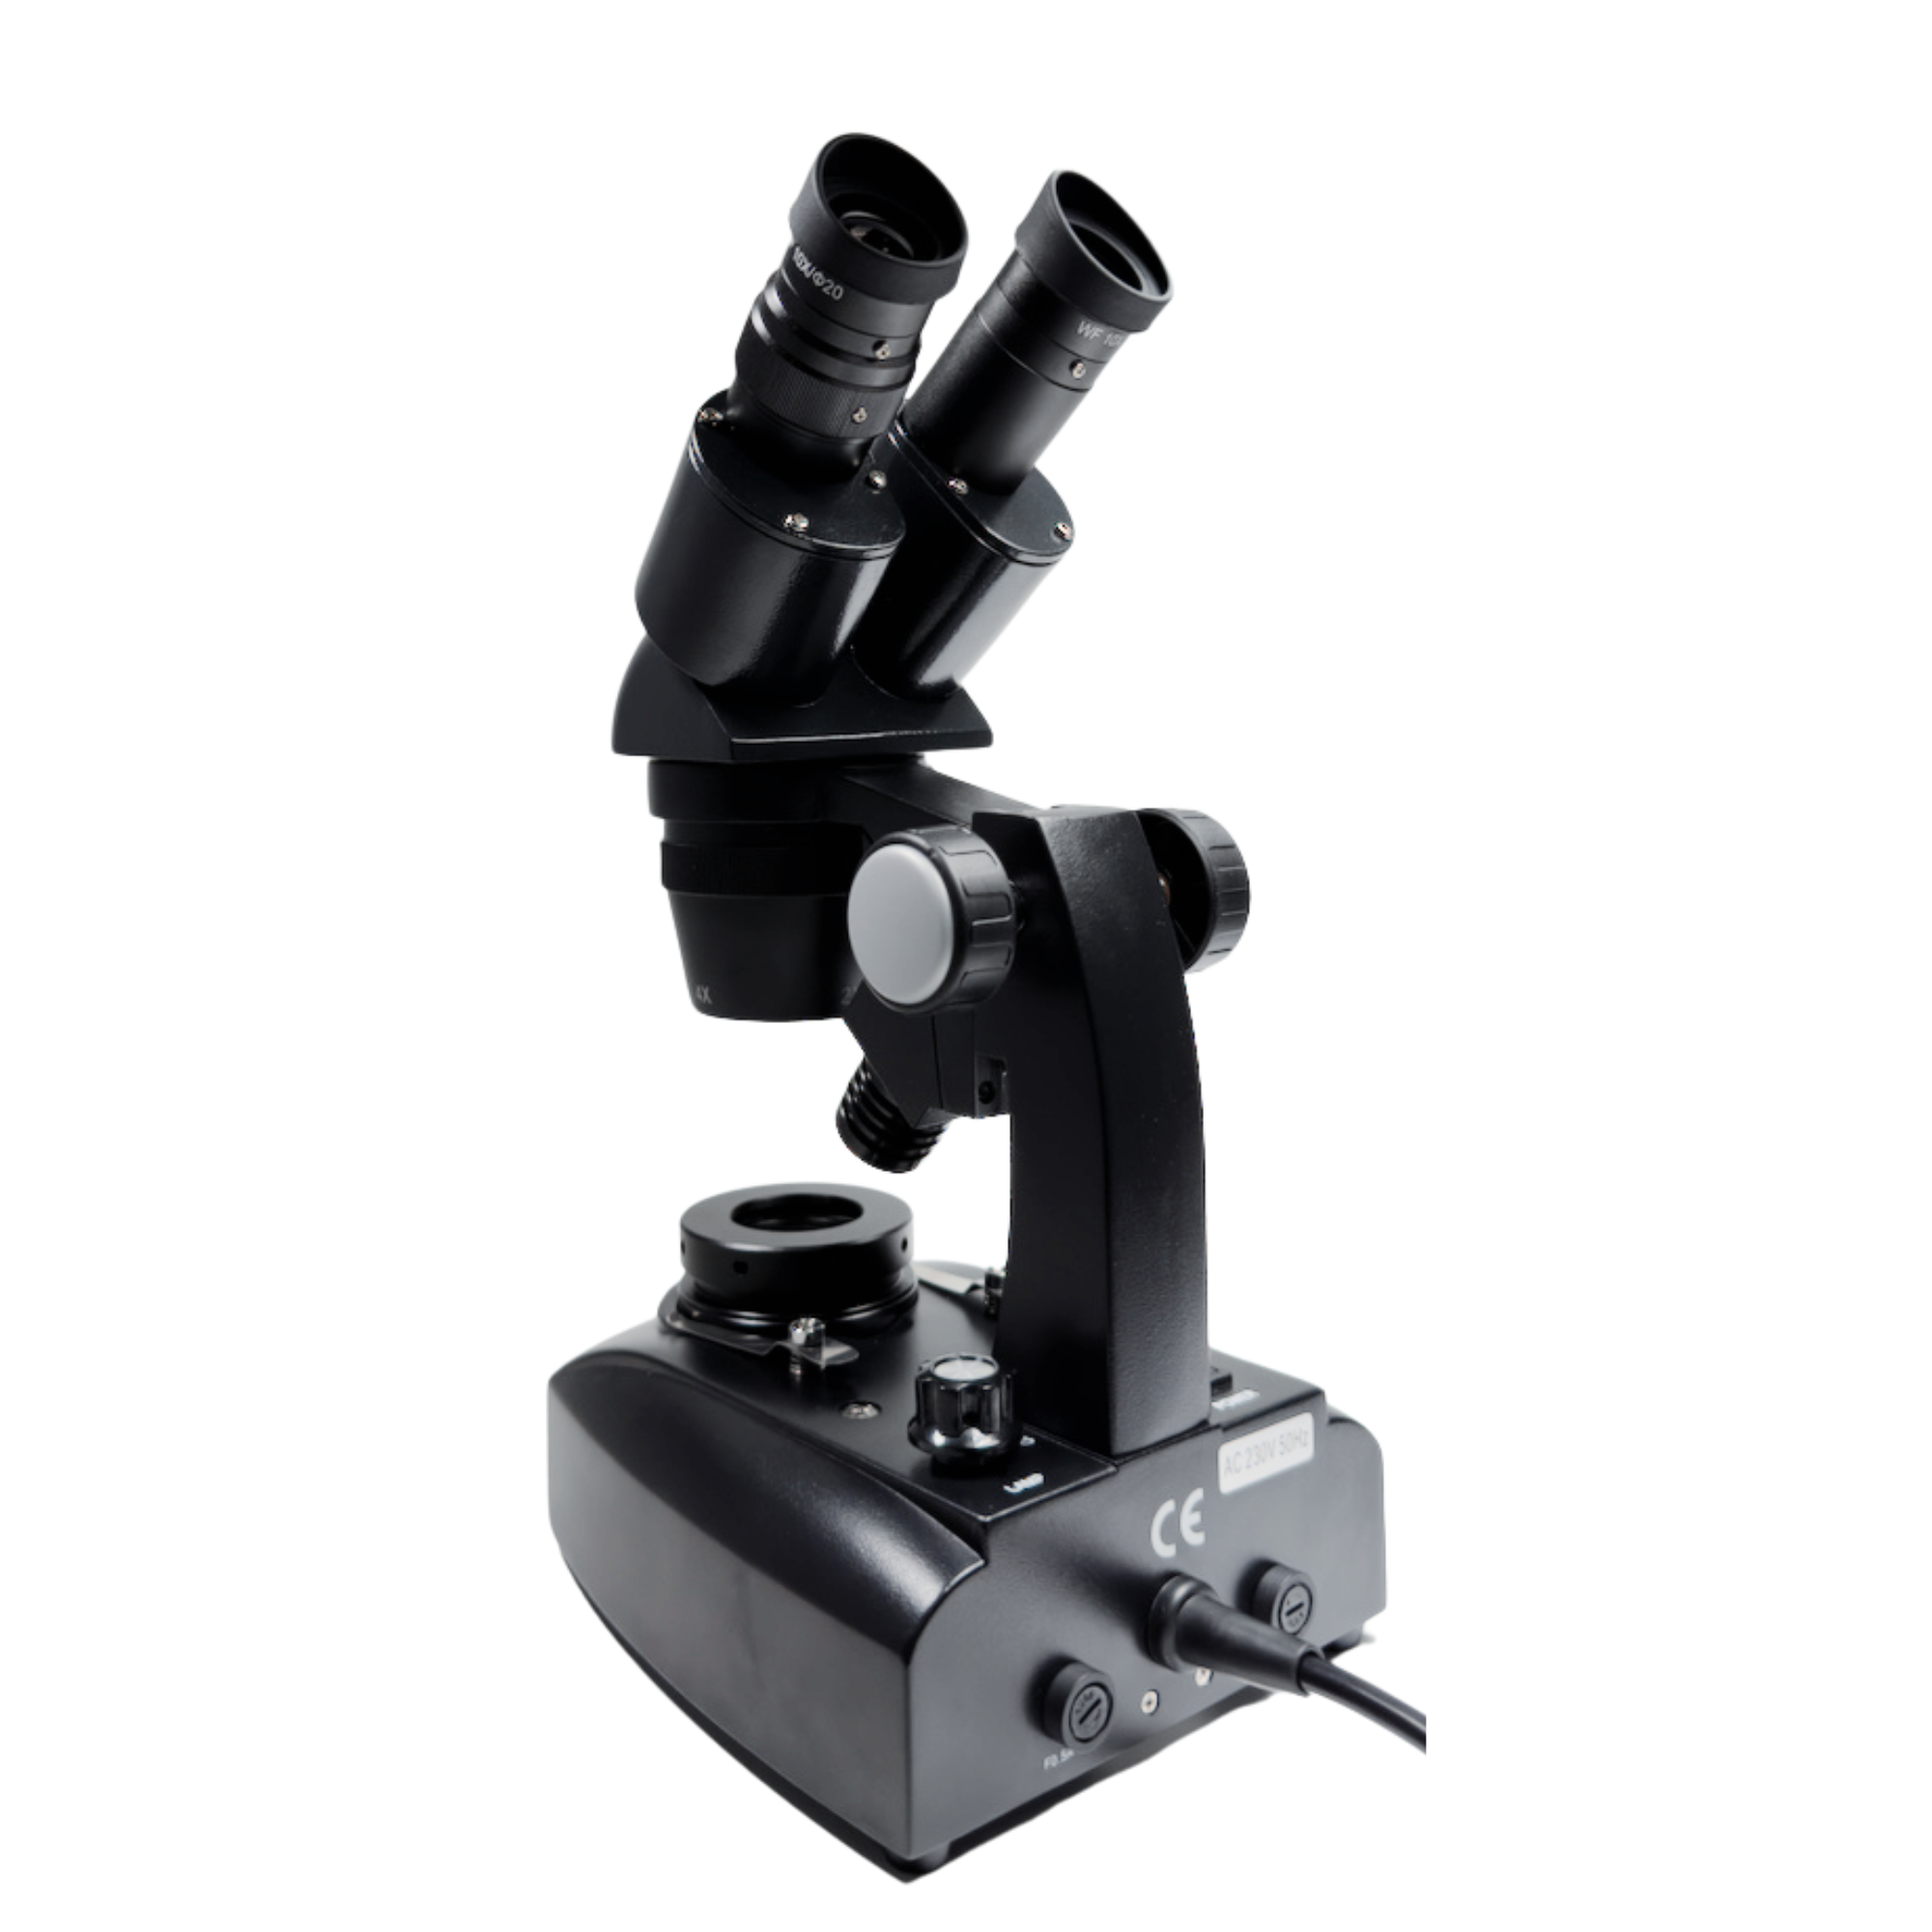 Βασικό γεμολογικό μικροσκόπιο